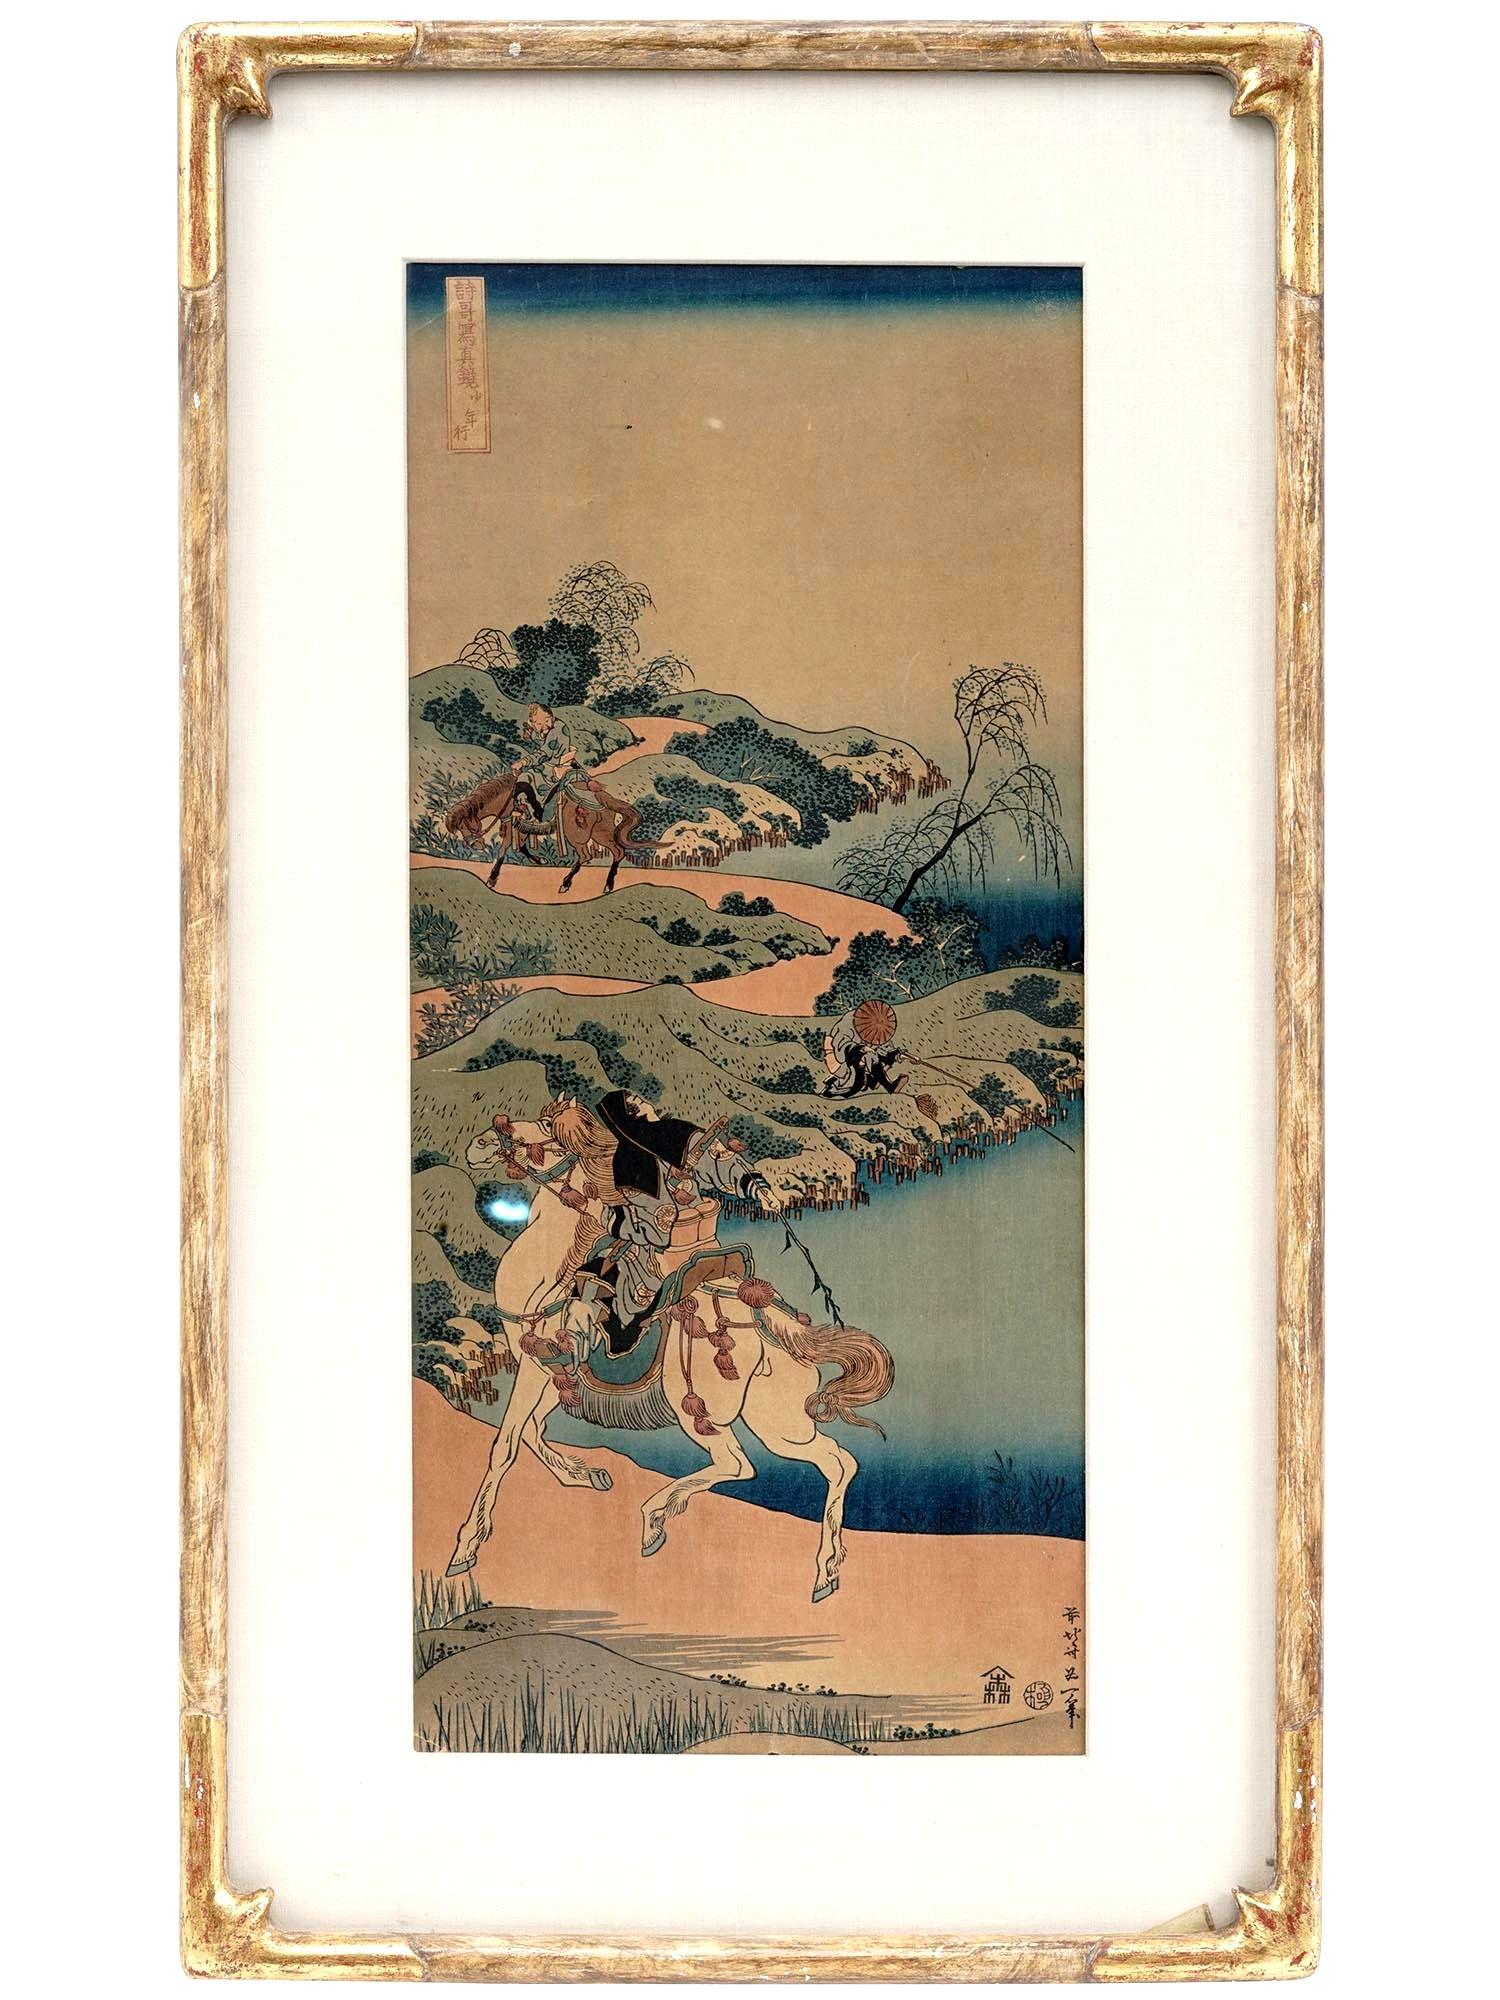 Gravure sur bois originale japonaise de Hokusai Katsushika, ? ??? '1760-1849'
Gravure sur bois en couleur sur papier de Katsushika Hokusai, 1760 à 1849, graveur japonais d'ukiyo-e de la fin de la période Edo. De la série Miroir réaliste des poètes,